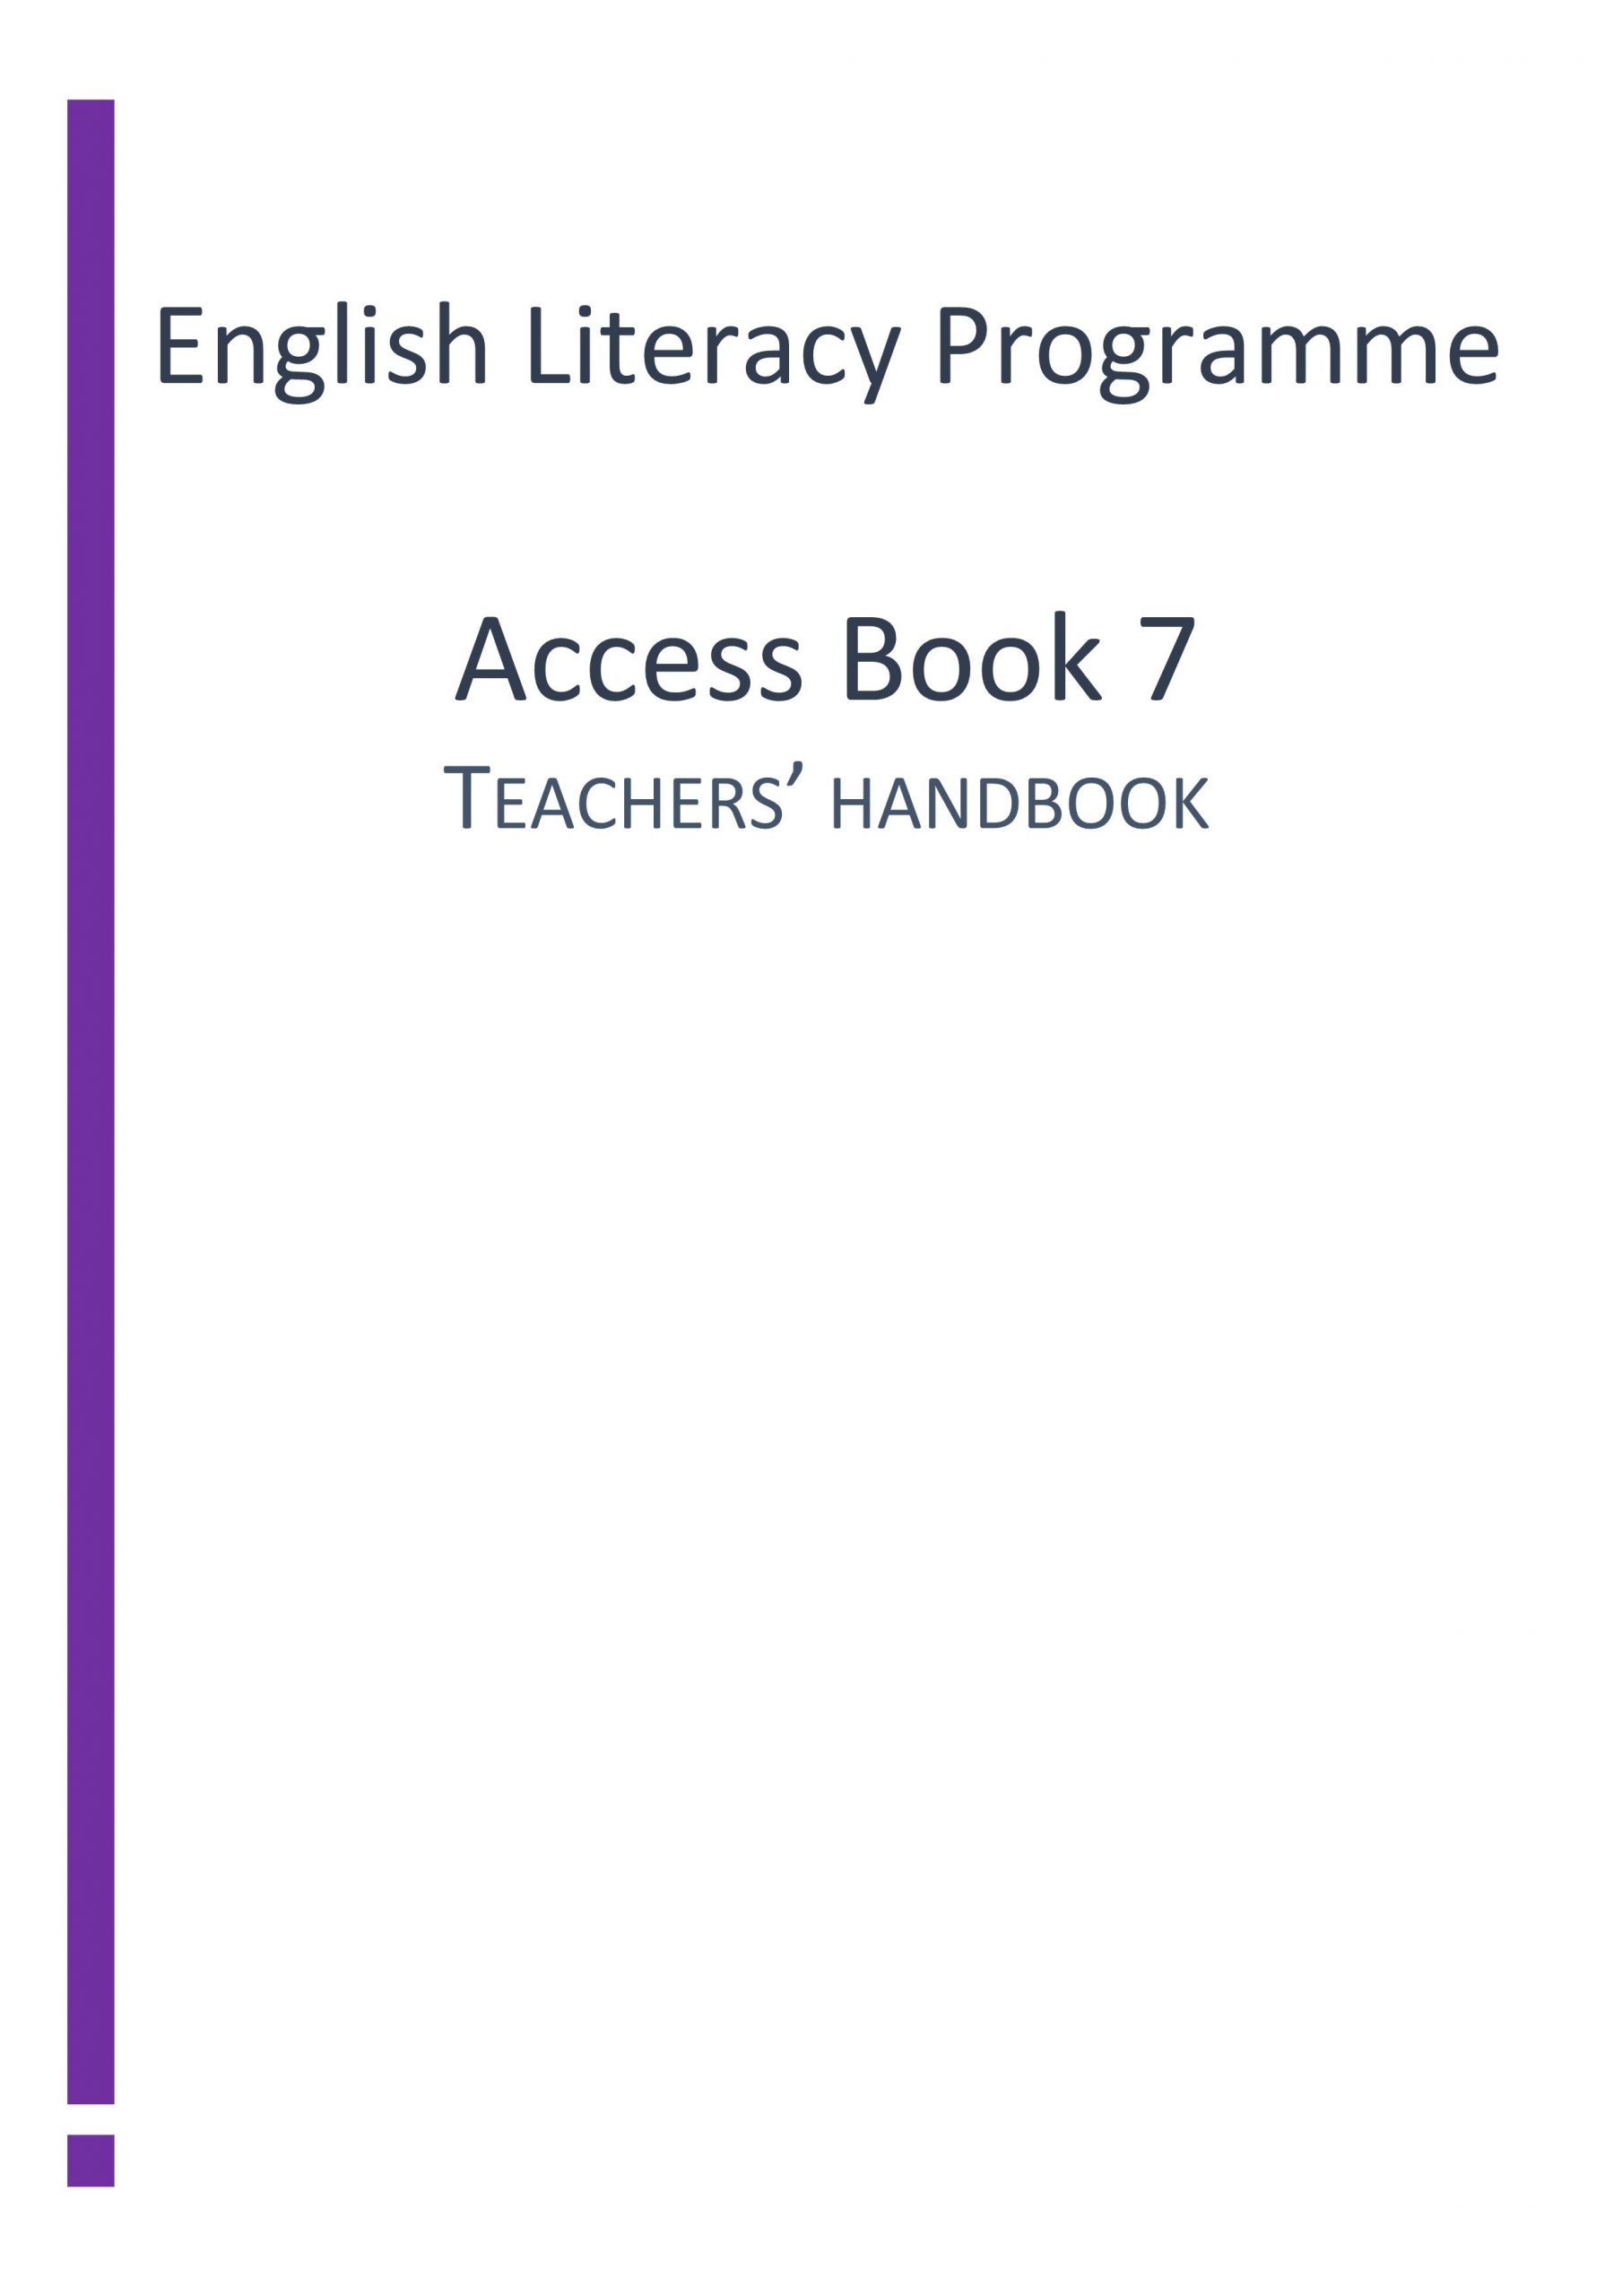 دليل المعلم Access Book الفصل الدراسي الثاني الصف السابع مادة اللغة الانجليزية 